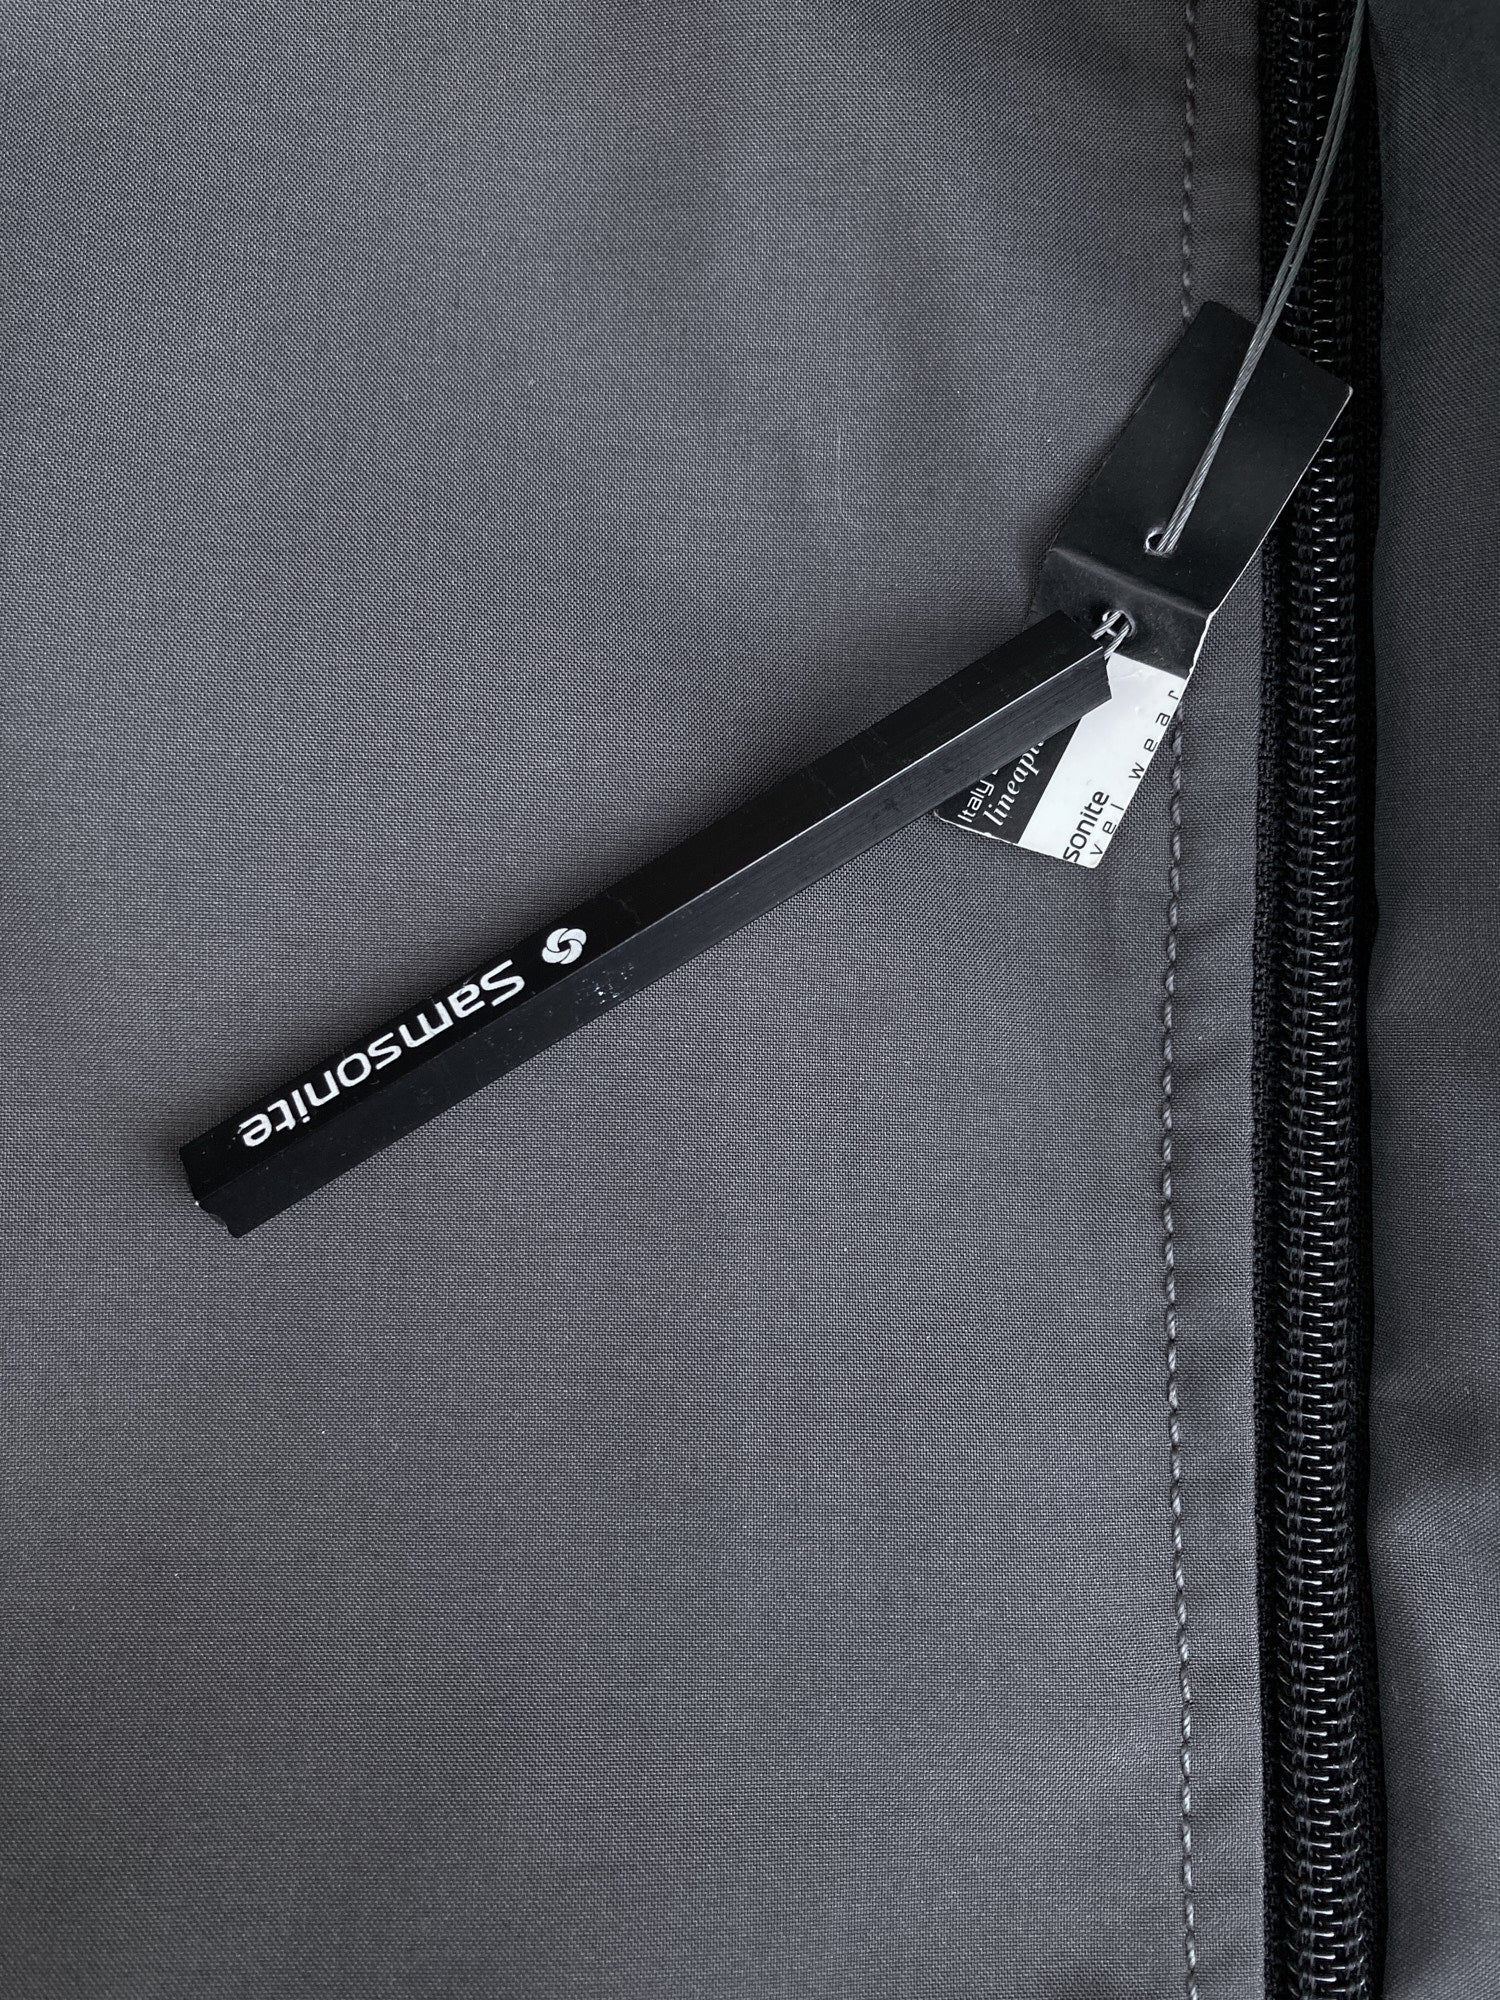 Samsonite 1990s grey polyester blend removable liner zip coat - size 48